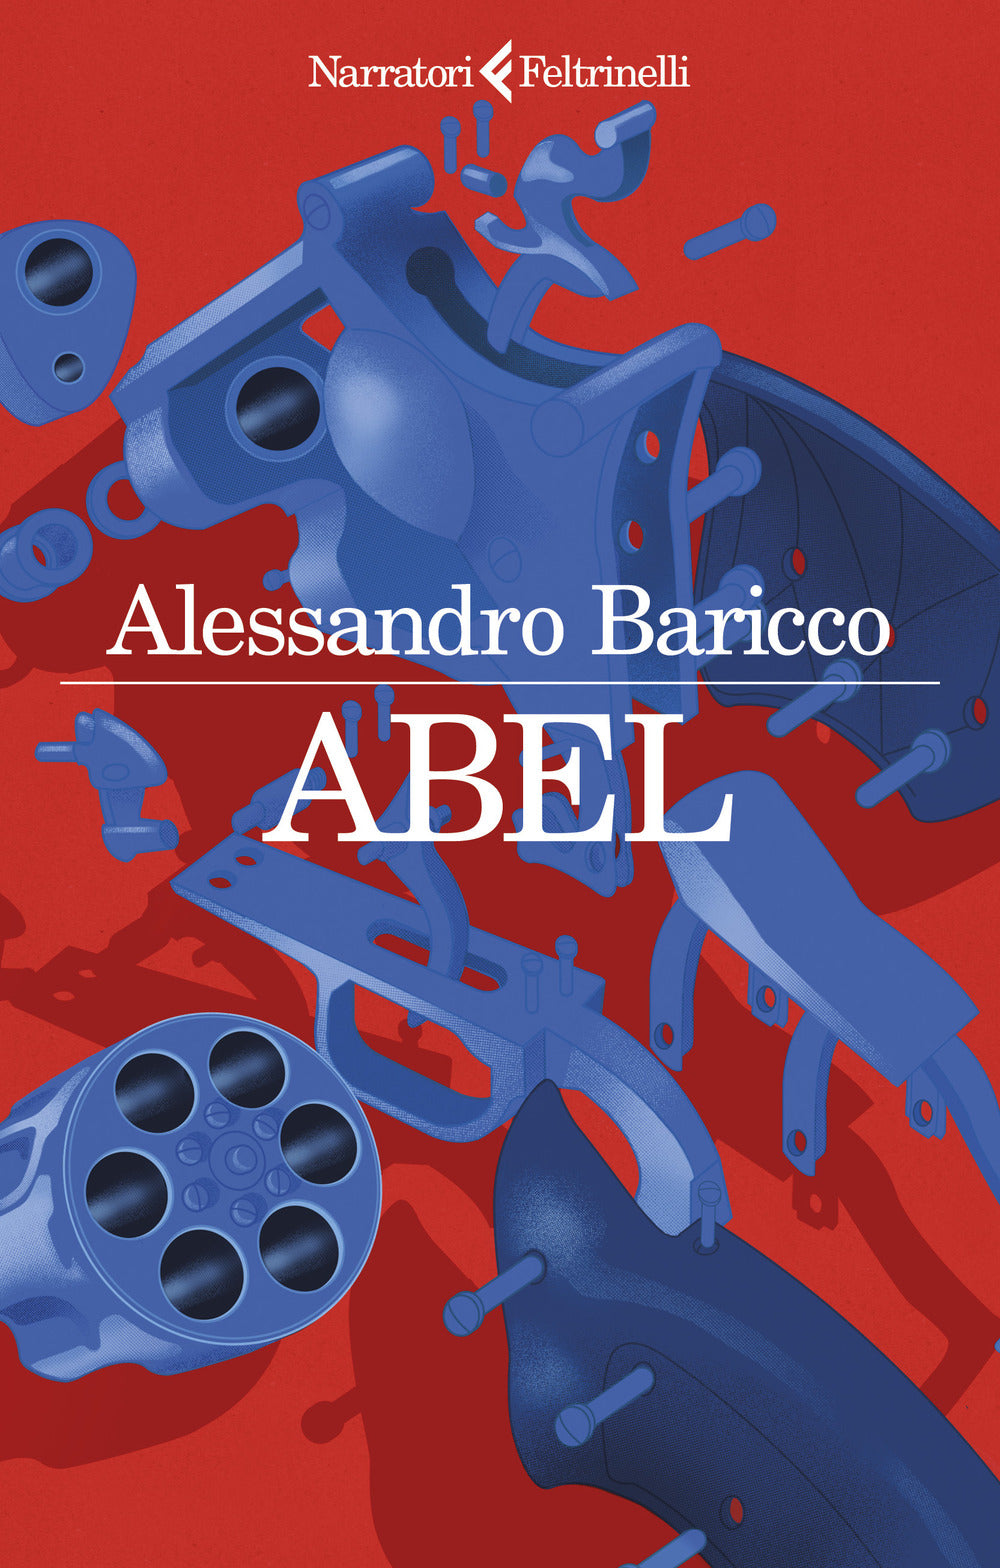 Abel, di Alessandro Baricco